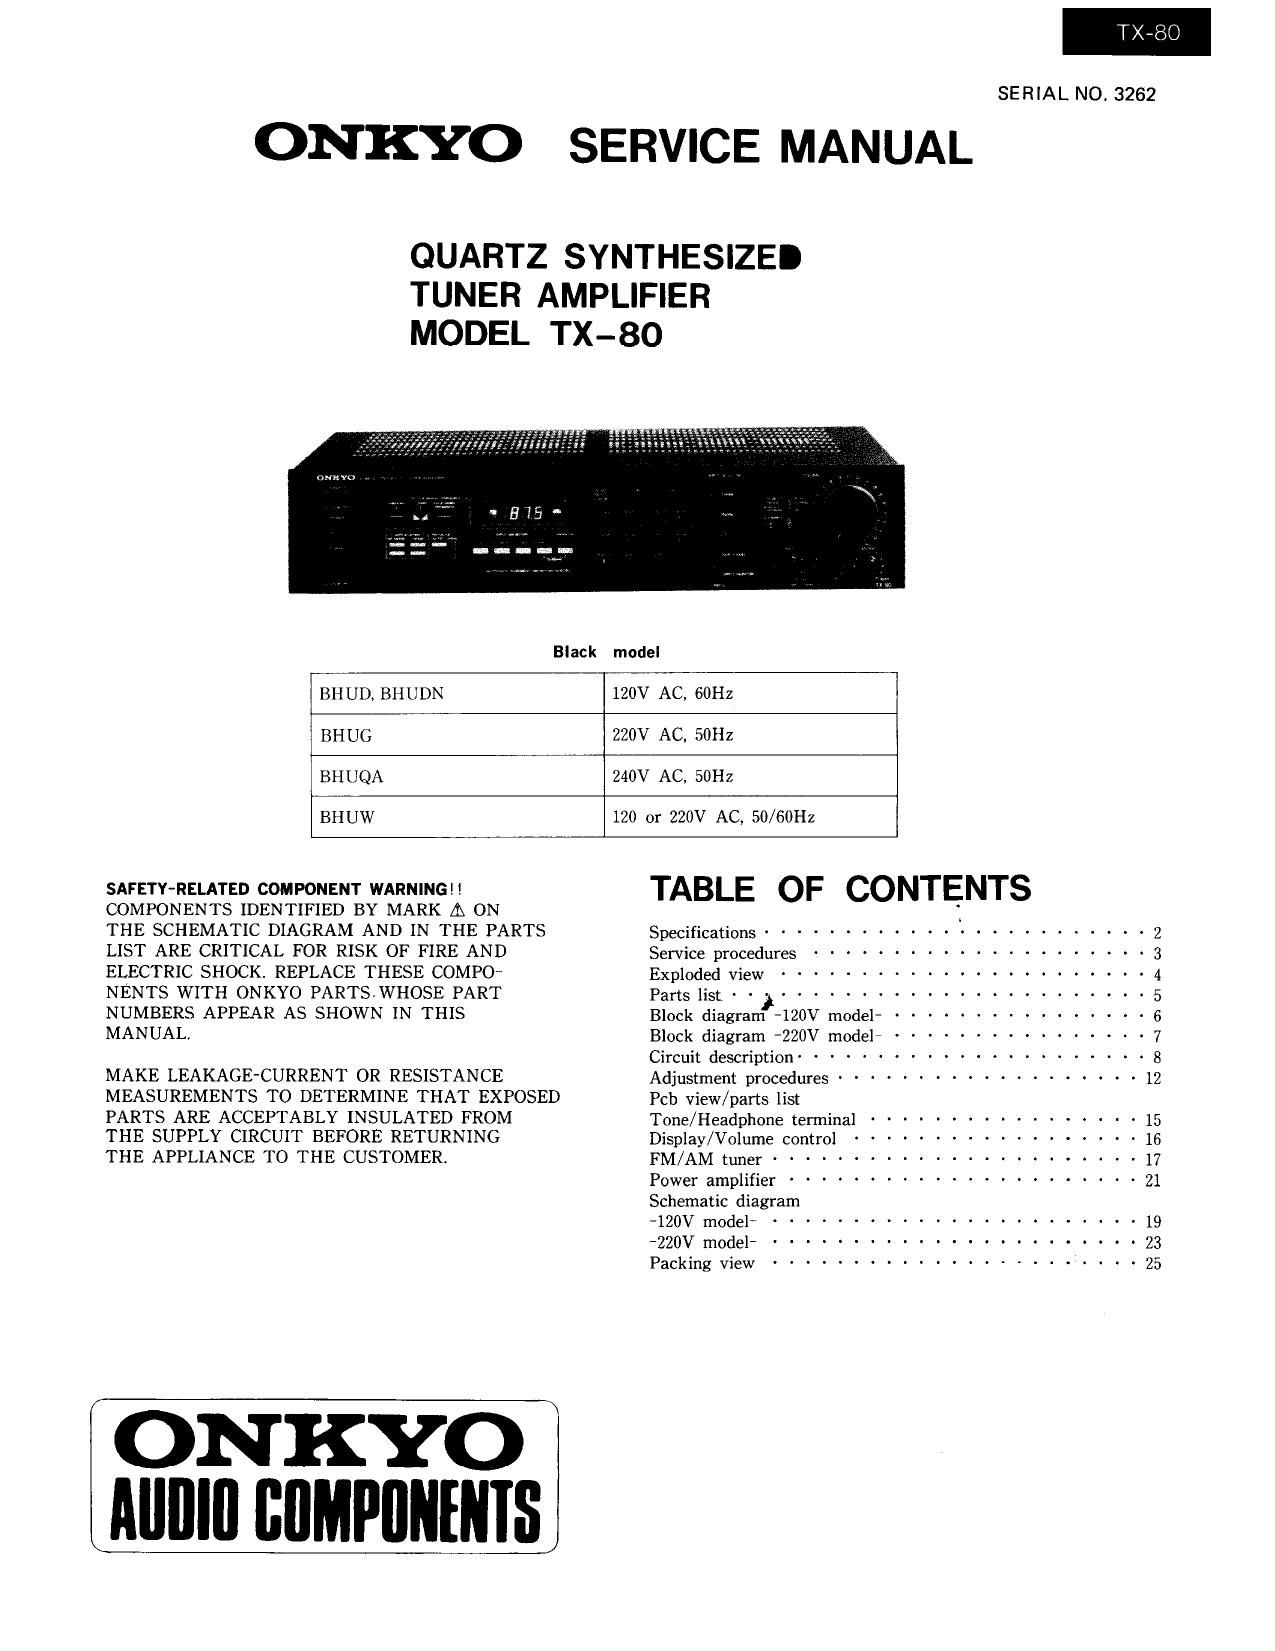 Onkyo TX 80 Service Manual